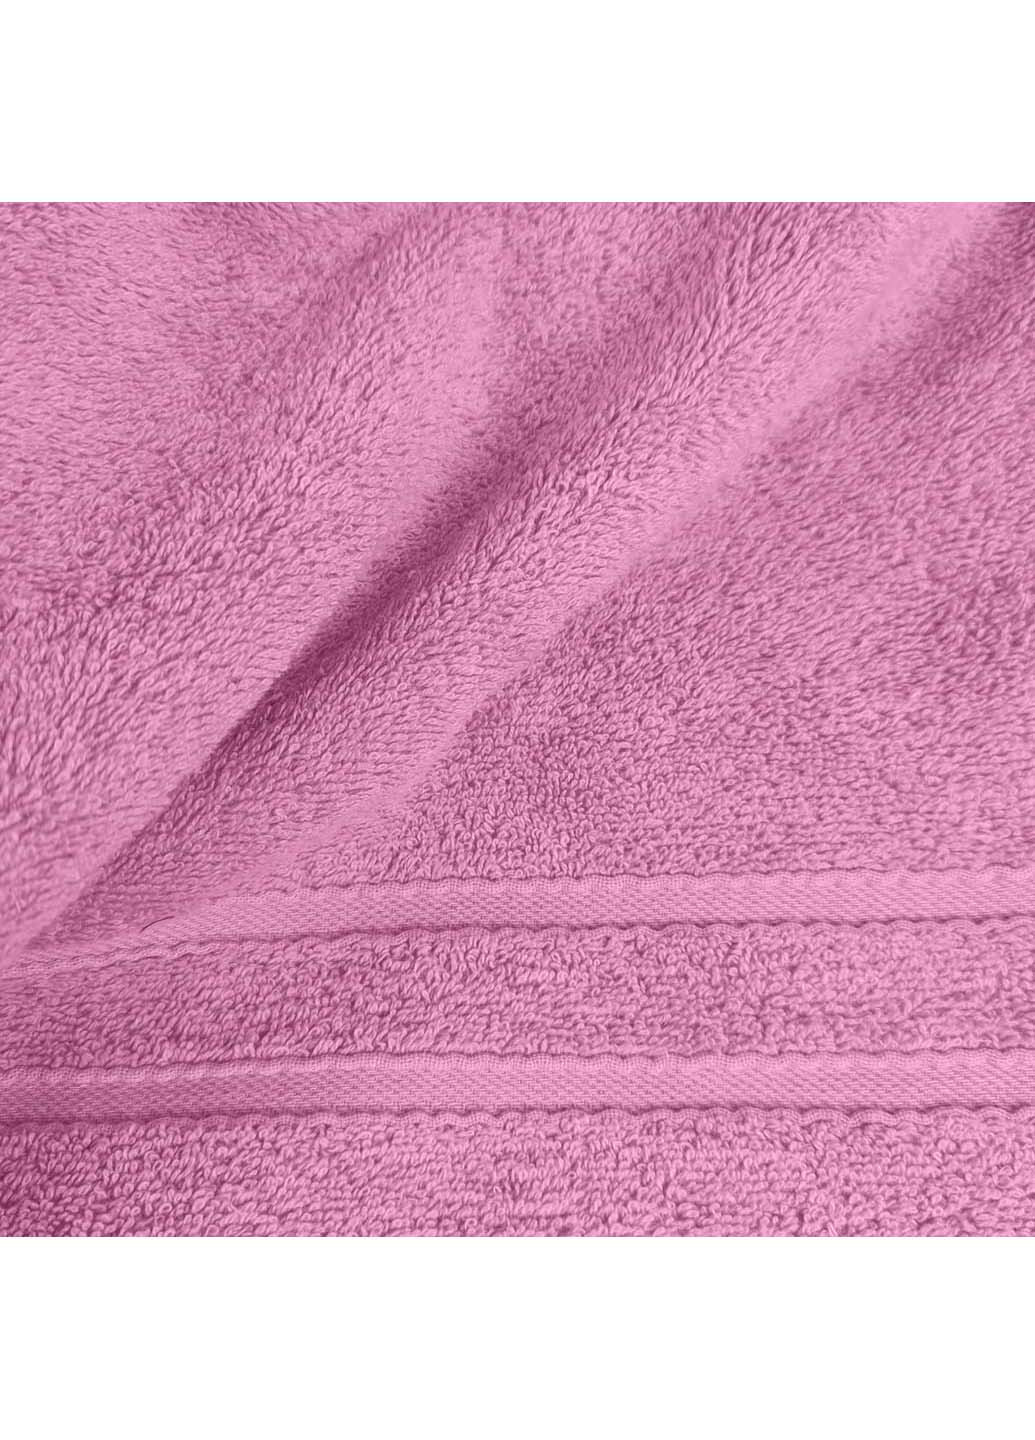 Cosas полотенце махровое 40х70 см розовый производство -